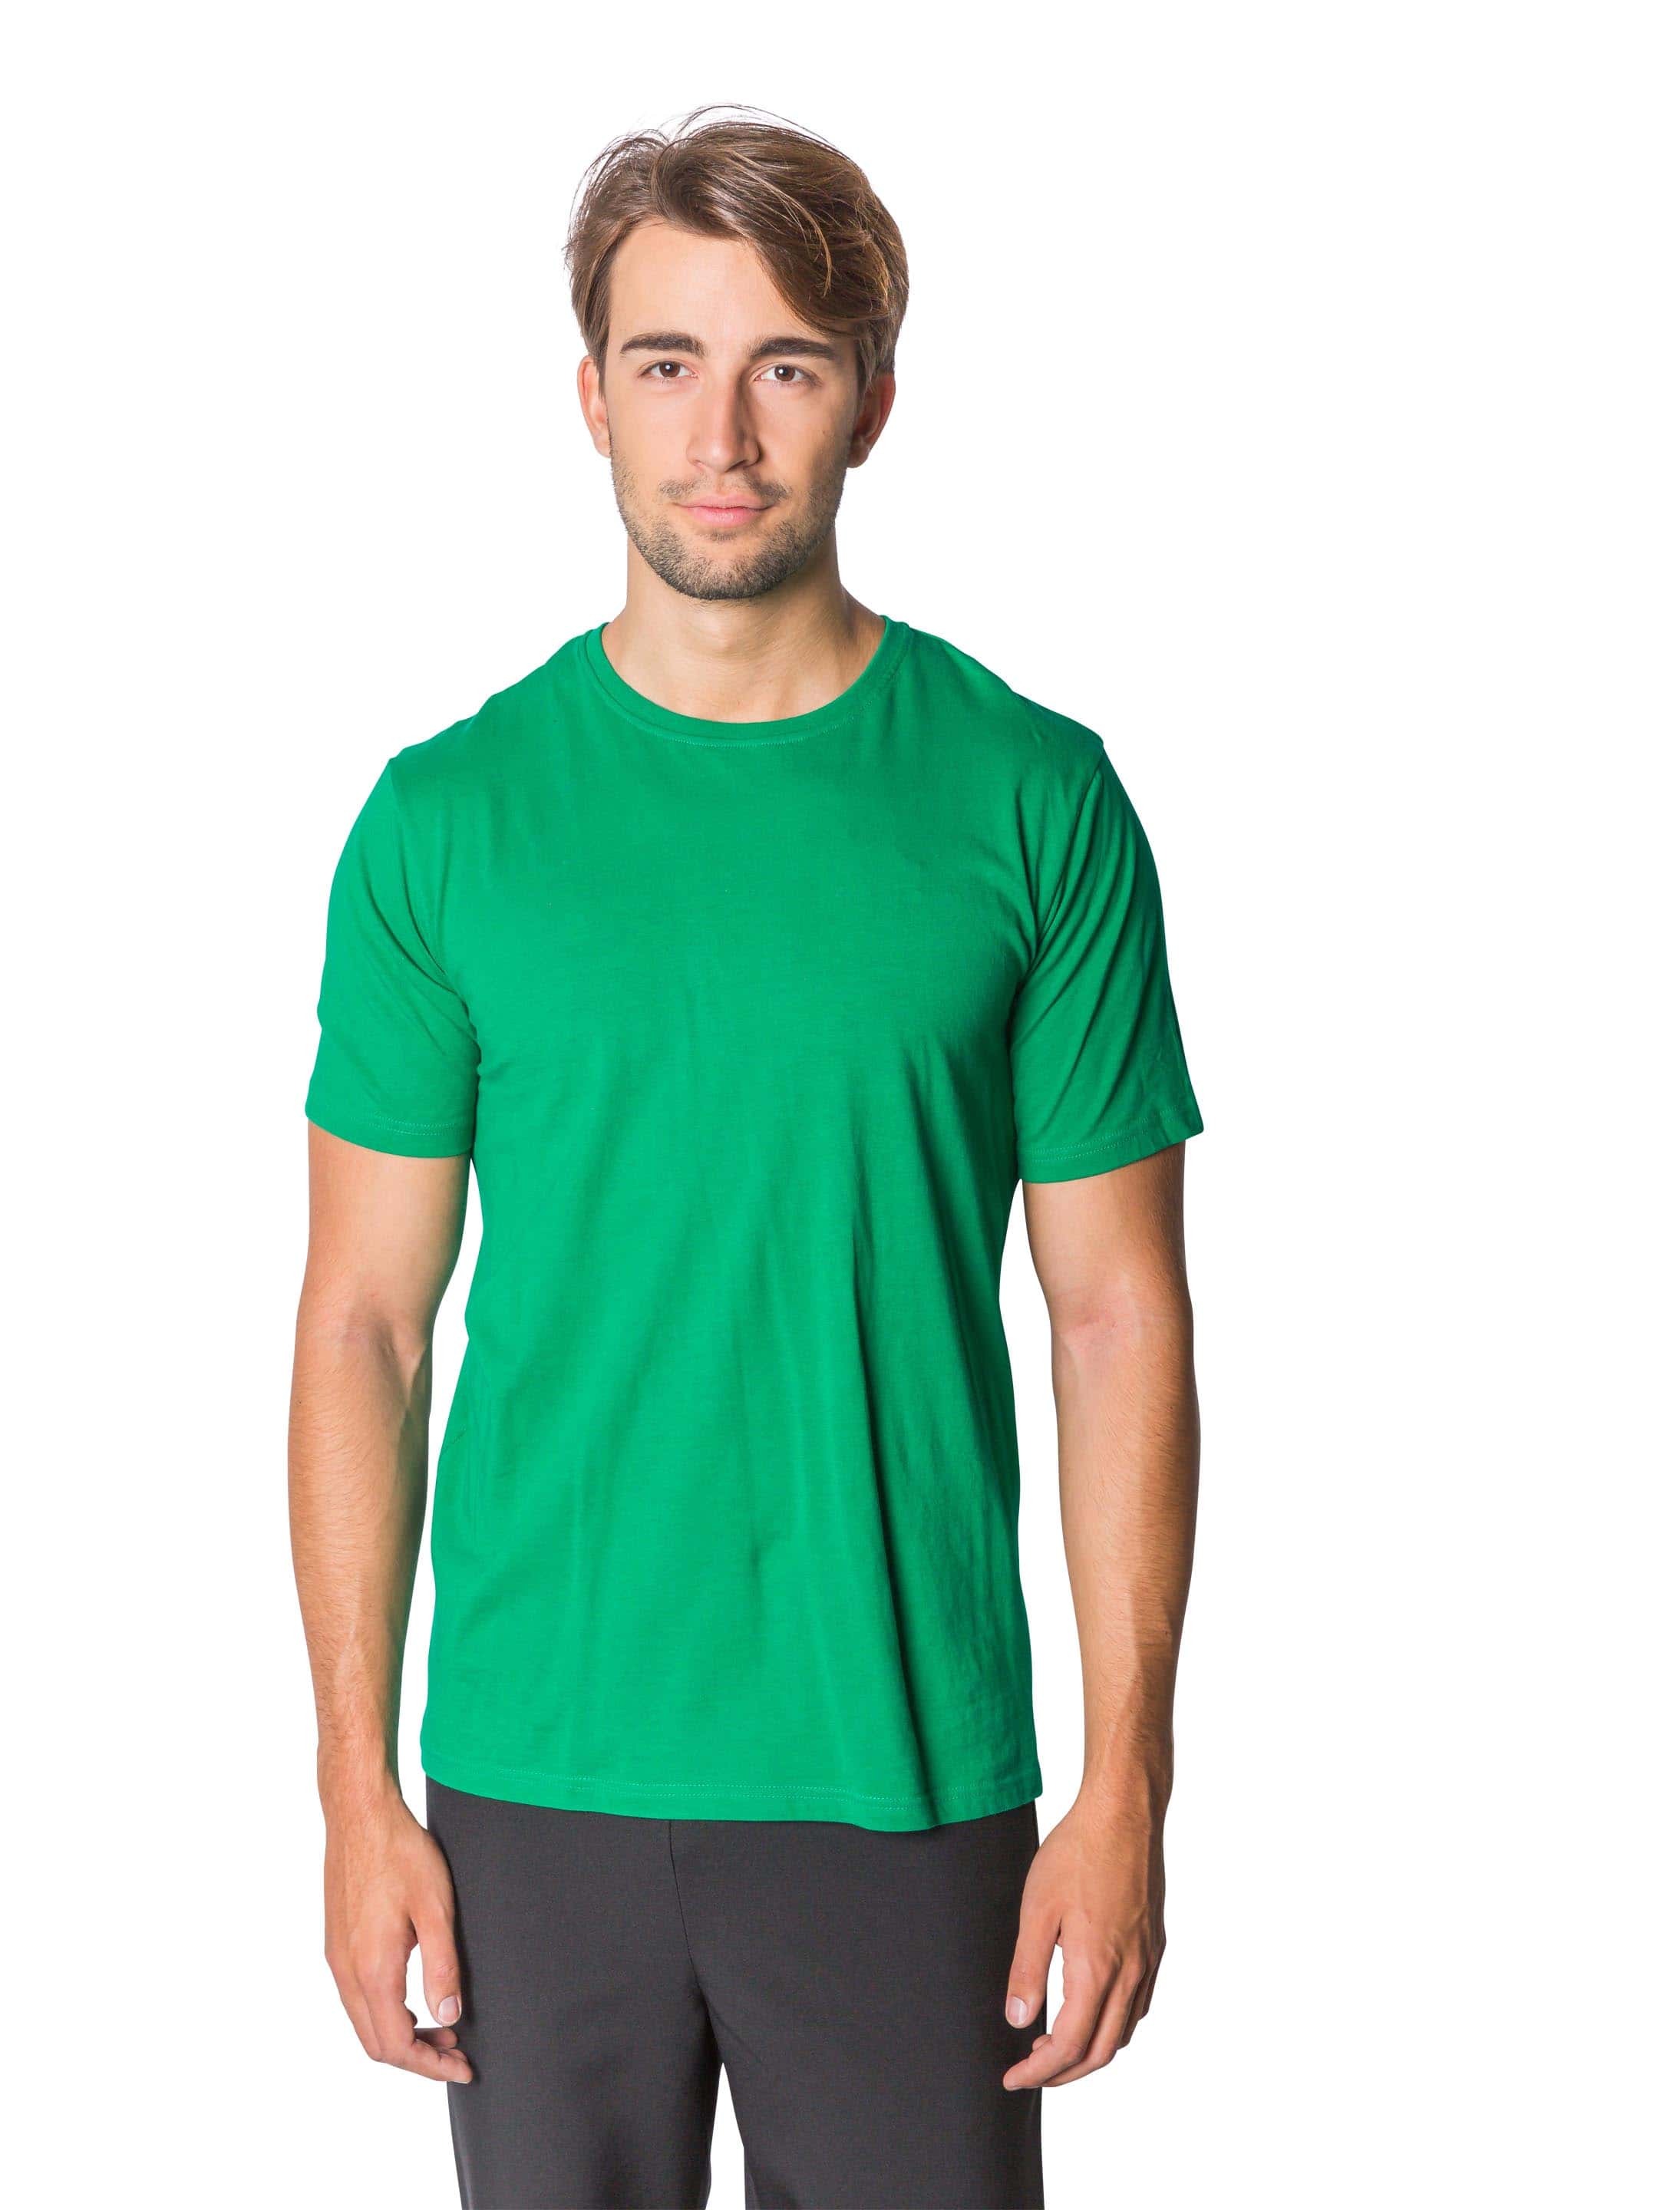 T-Shirt Herren grün M